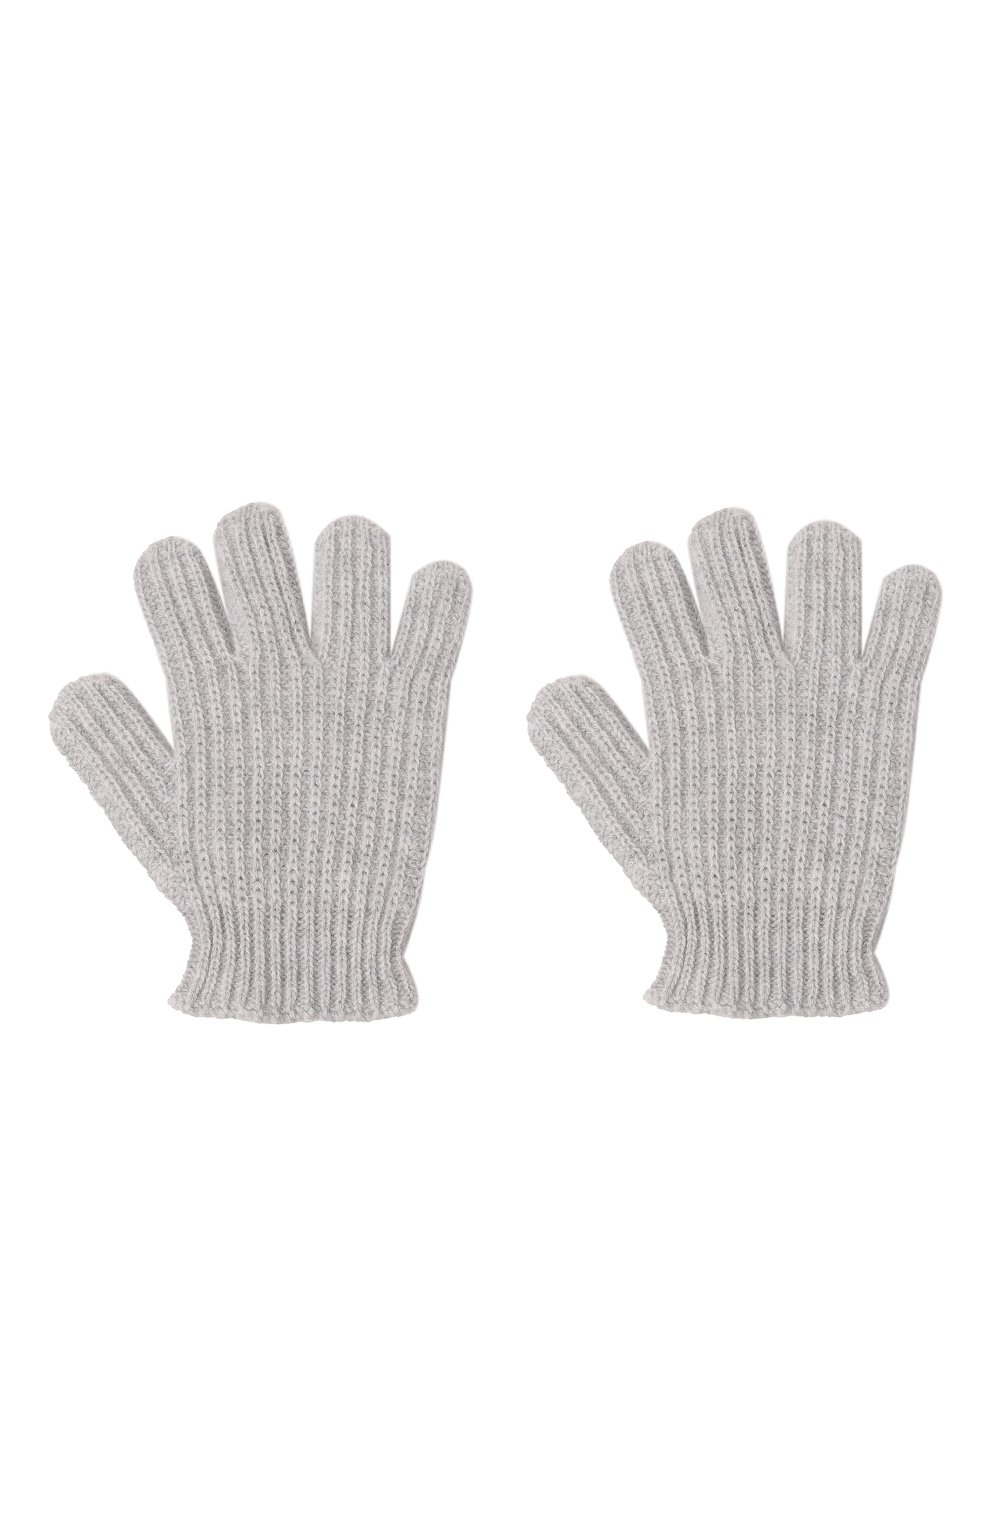 Детские кашемировые перчатки GIORGETTI CASHMERE светло-серого цвета, арт. MB1855 | Фото 2 (Материал: Текстиль, Кашемир, Шерсть)